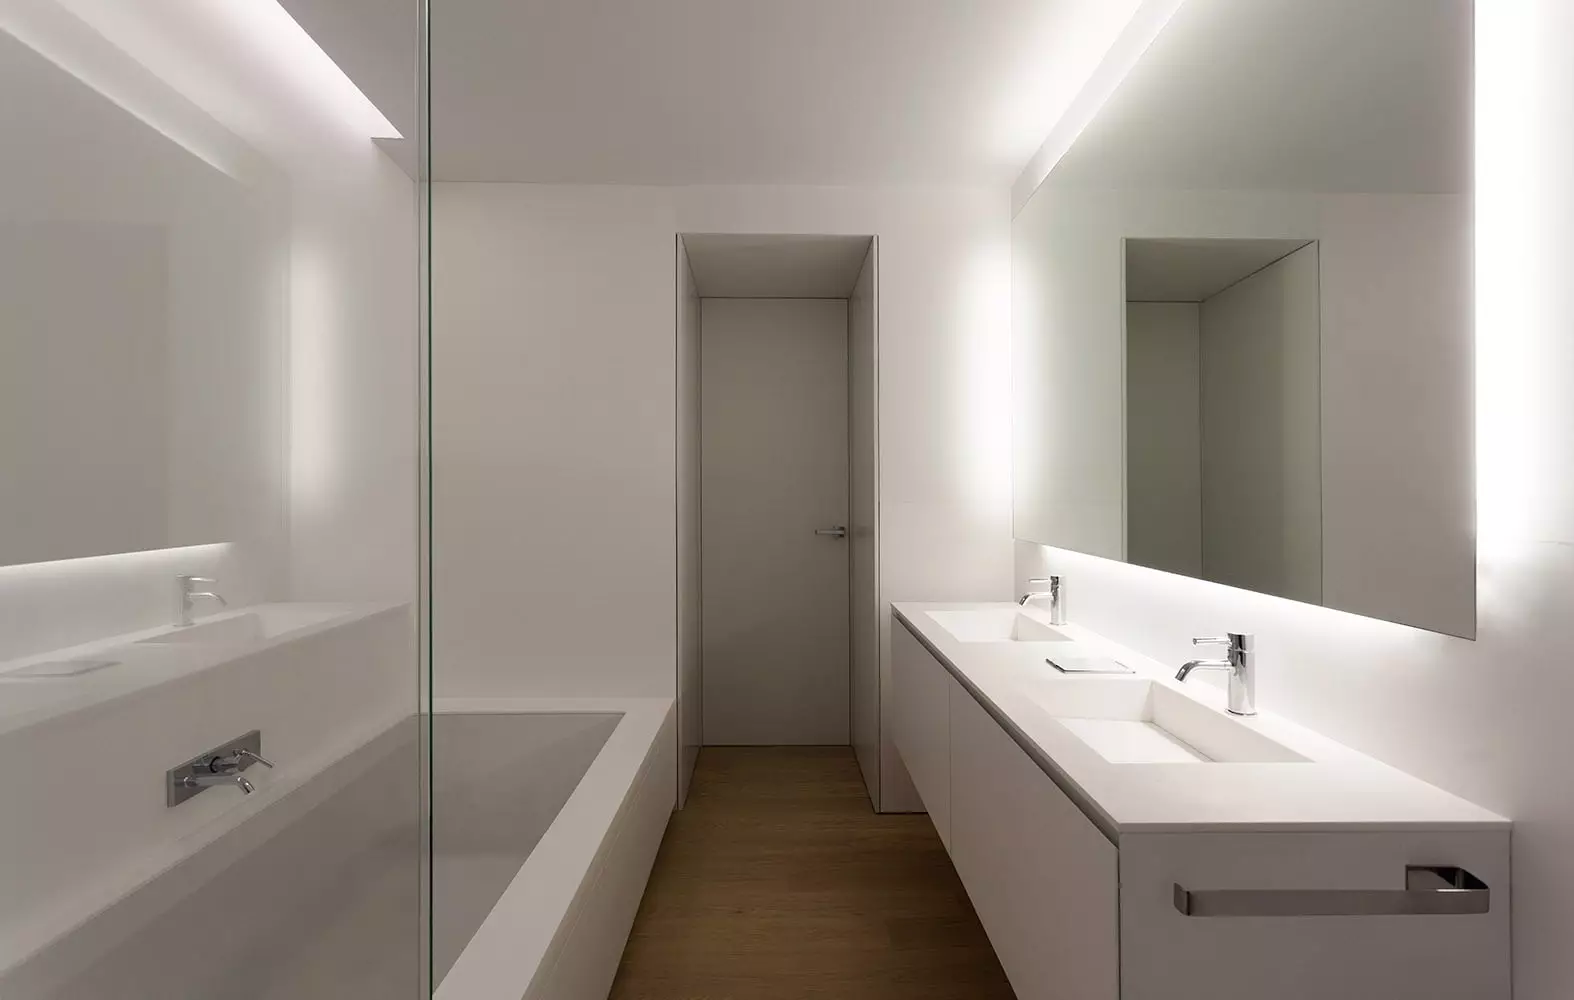 बाथरूम डिजाइन (1 pictud0 फोटोहरू): परियोजना 2021 र भित्री डिजाइन विचारहरू। कोठा कसरी सुसज्जित बनाउने? डिजाइनरबाट अनुपालनका लागि सरल र एलिट विकल्पहरू 10147_38